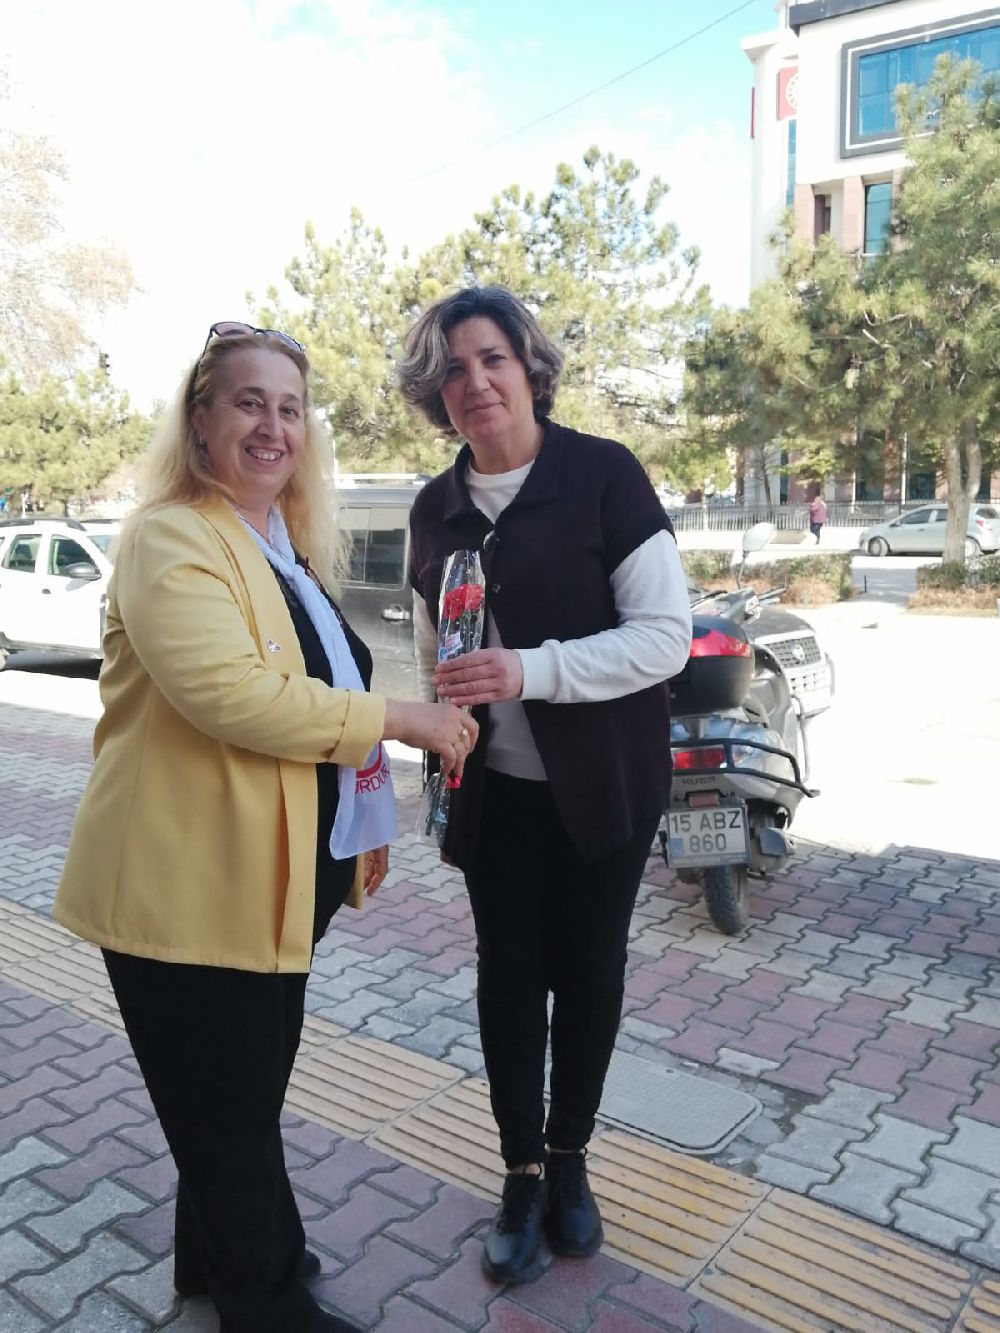 MHP Burdur KAÇEP ve Ülkü Ocakları kadınları unutmadı